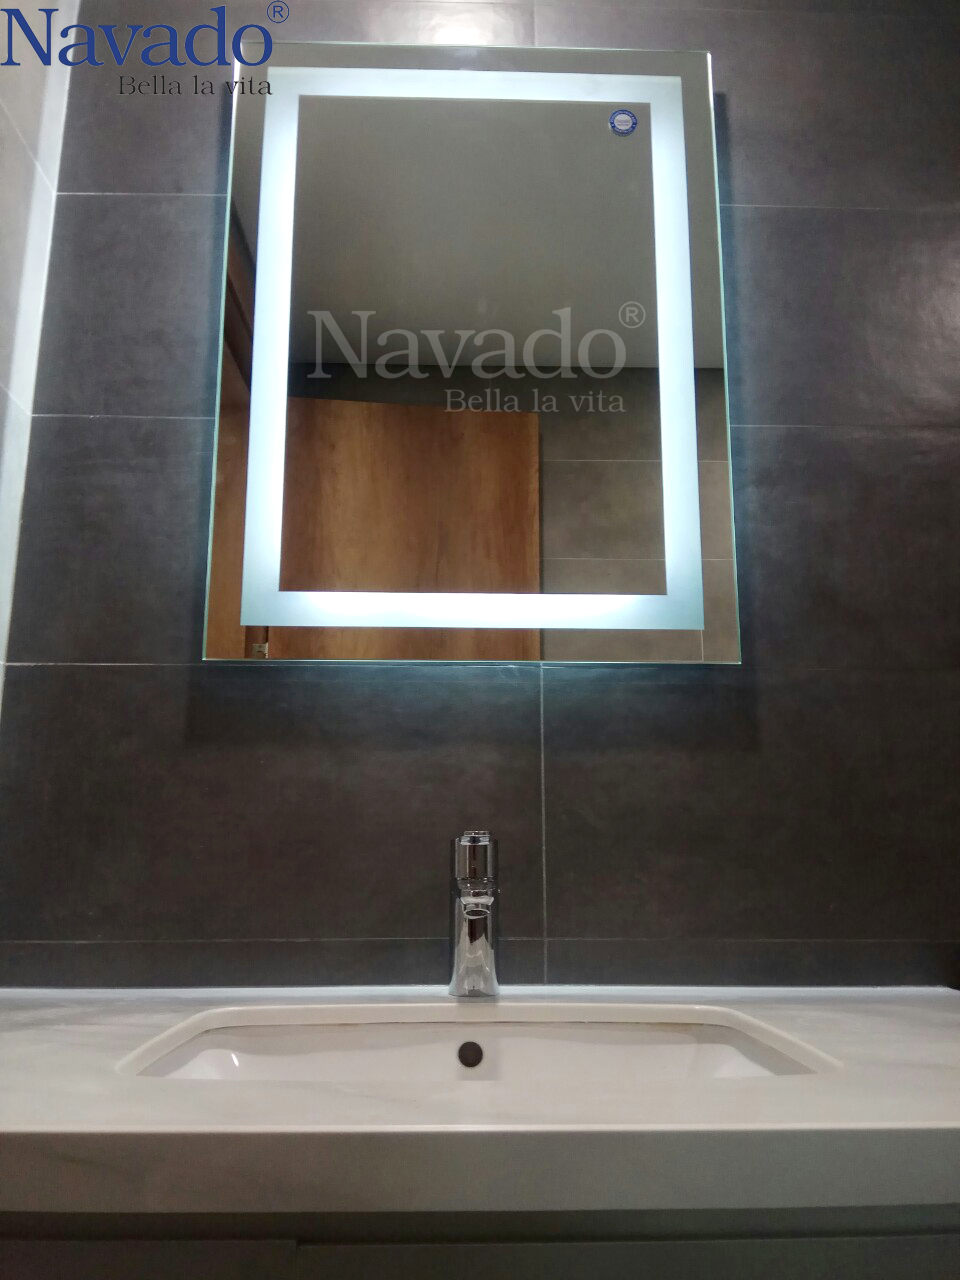 Gương phòng tắm led Navado mang đến một không gian phòng tắm hiện đại và bắt mắt hơn. Với đèn led sáng và tiết kiệm điện, sản phẩm của chúng tôi không chỉ giúp bạn trang trí phòng tắm mà còn giúp bạn tiết kiệm chi phí điện năng.